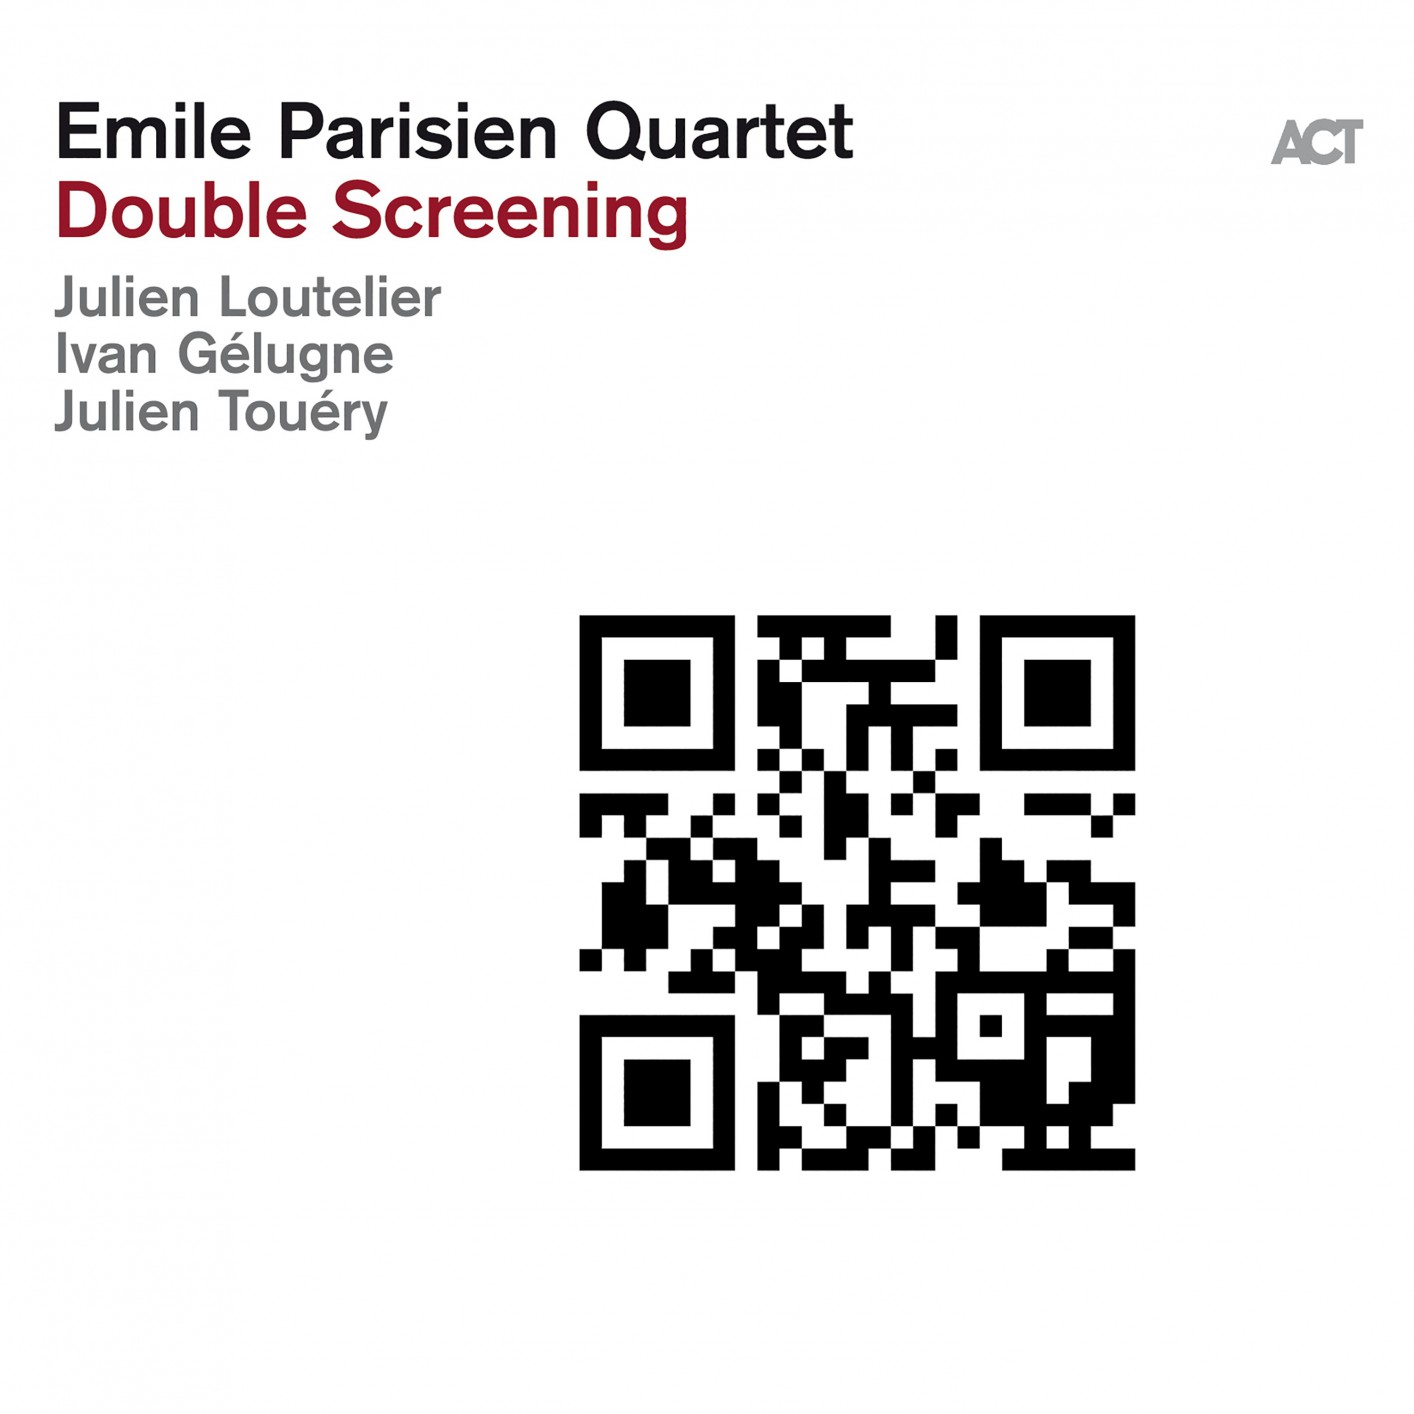 Emile Parisien Quartet – Double Screening (2019) [FLAC 24bit/96kHz]